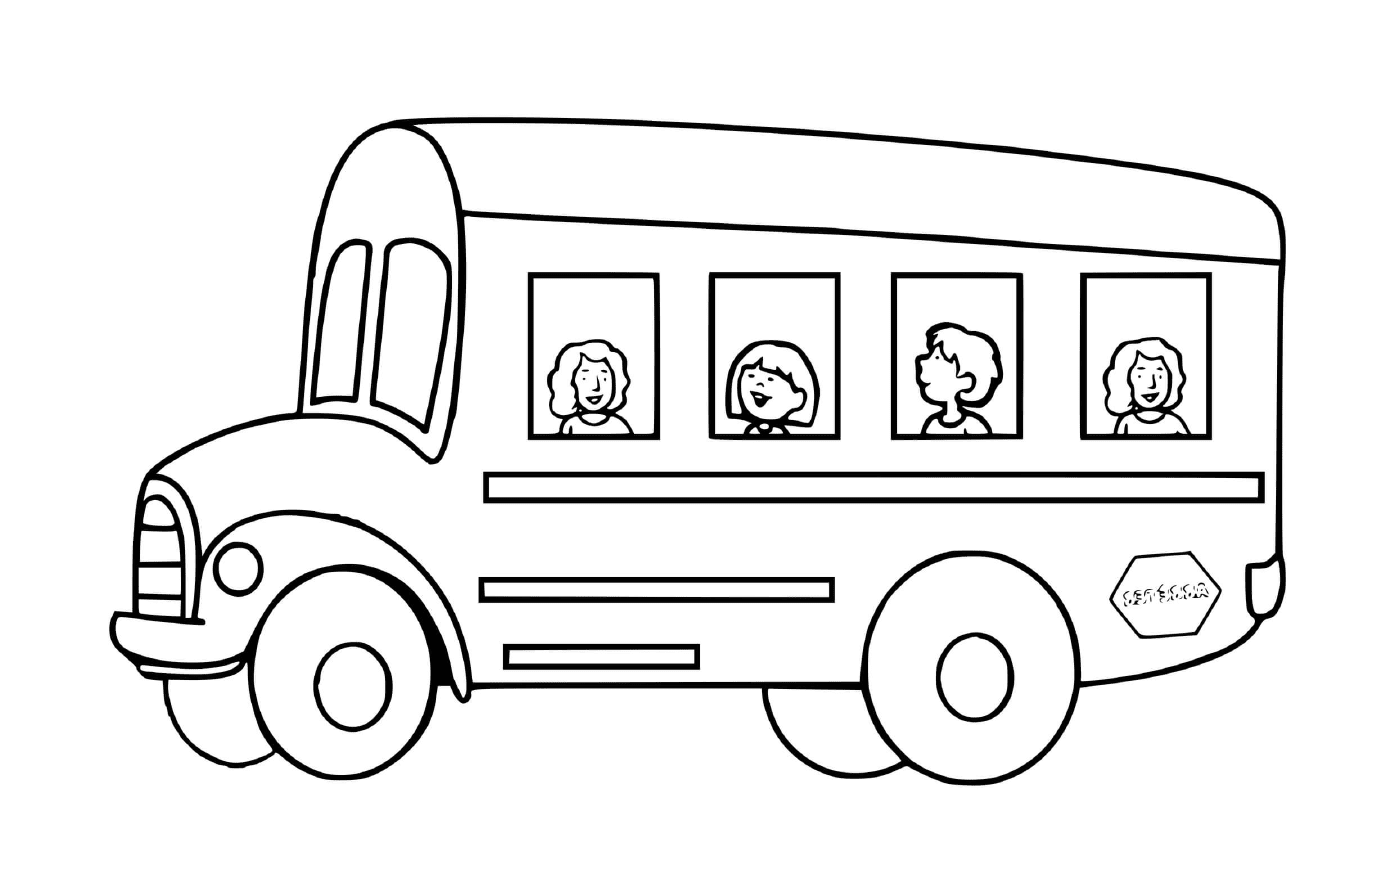  儿童上学交通:公共汽车 